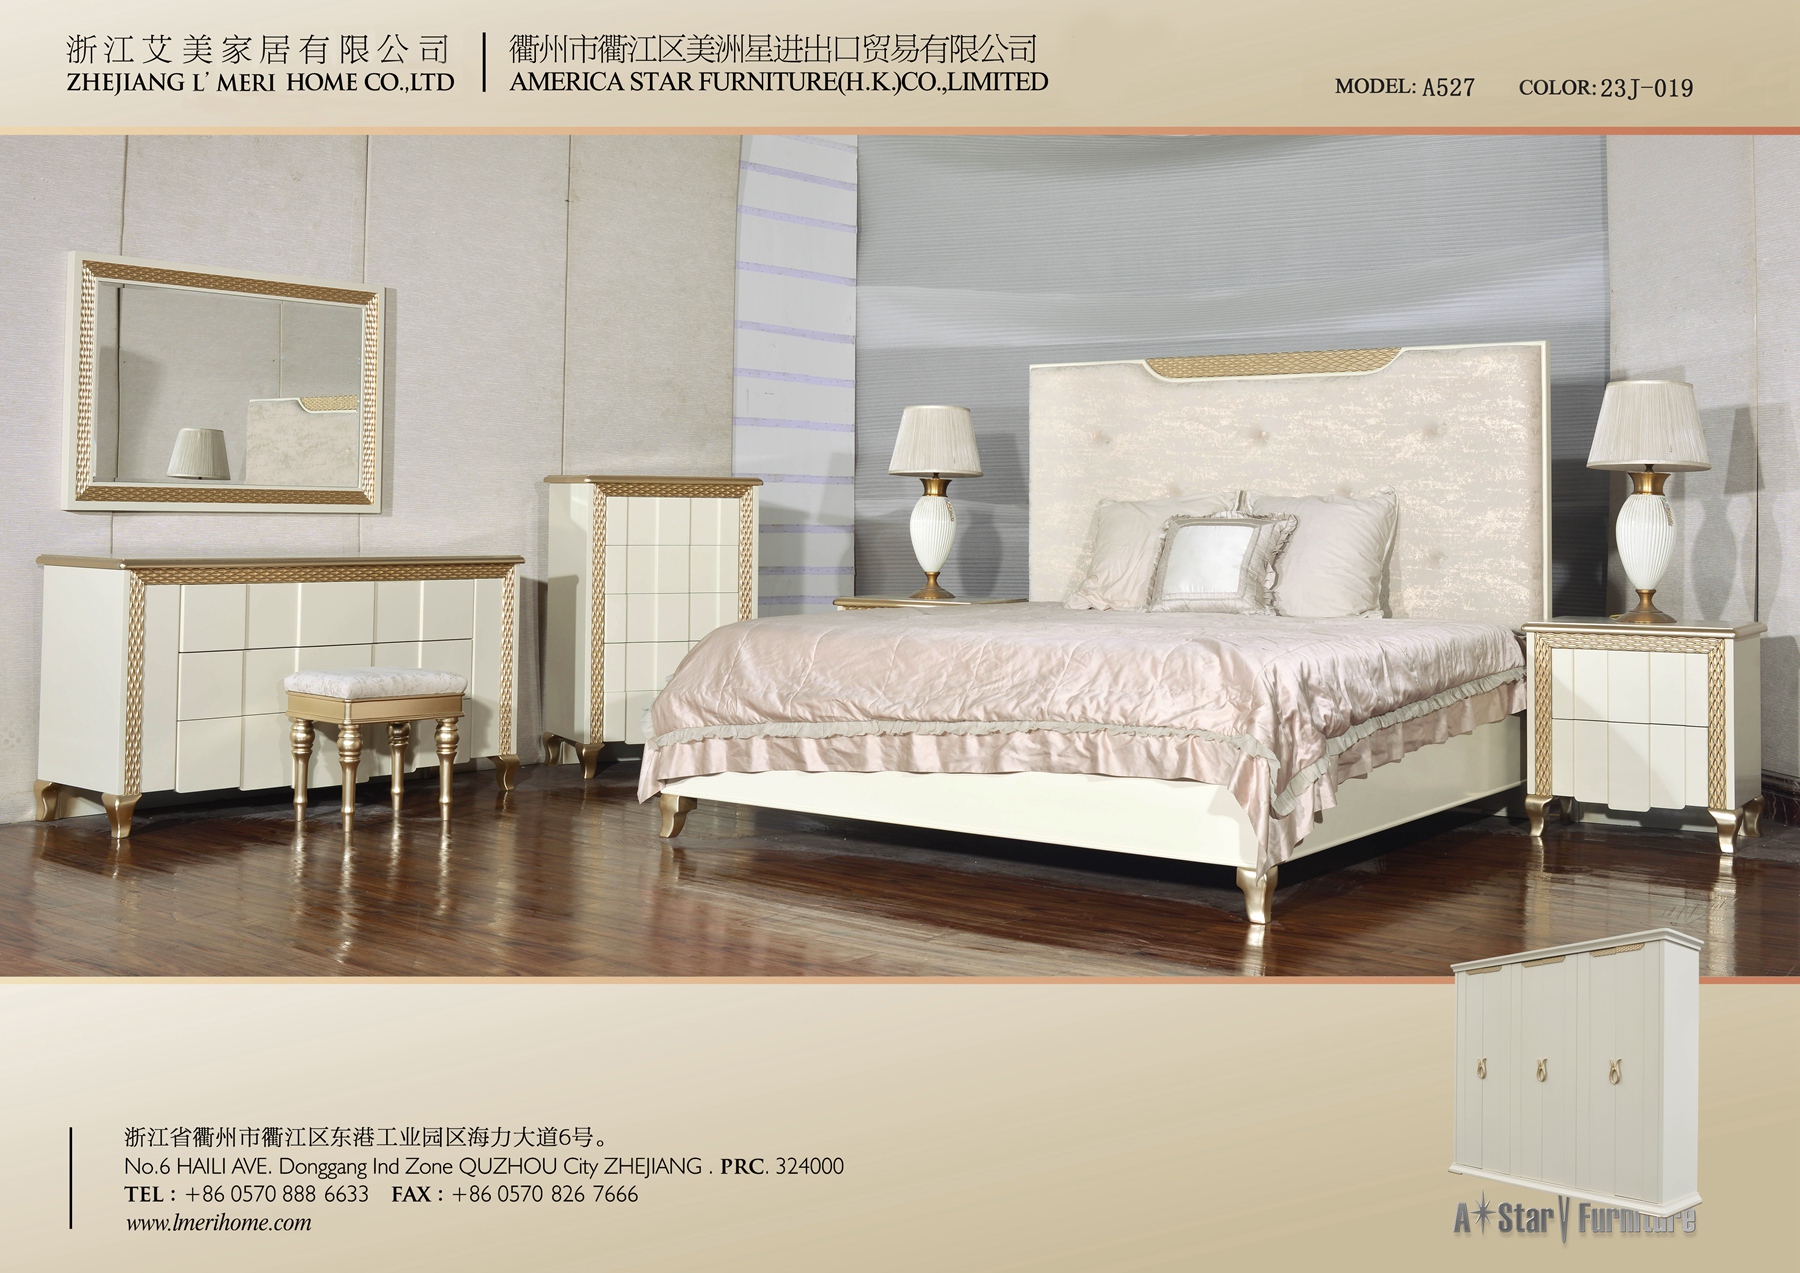 bedroom - Model no.: A527